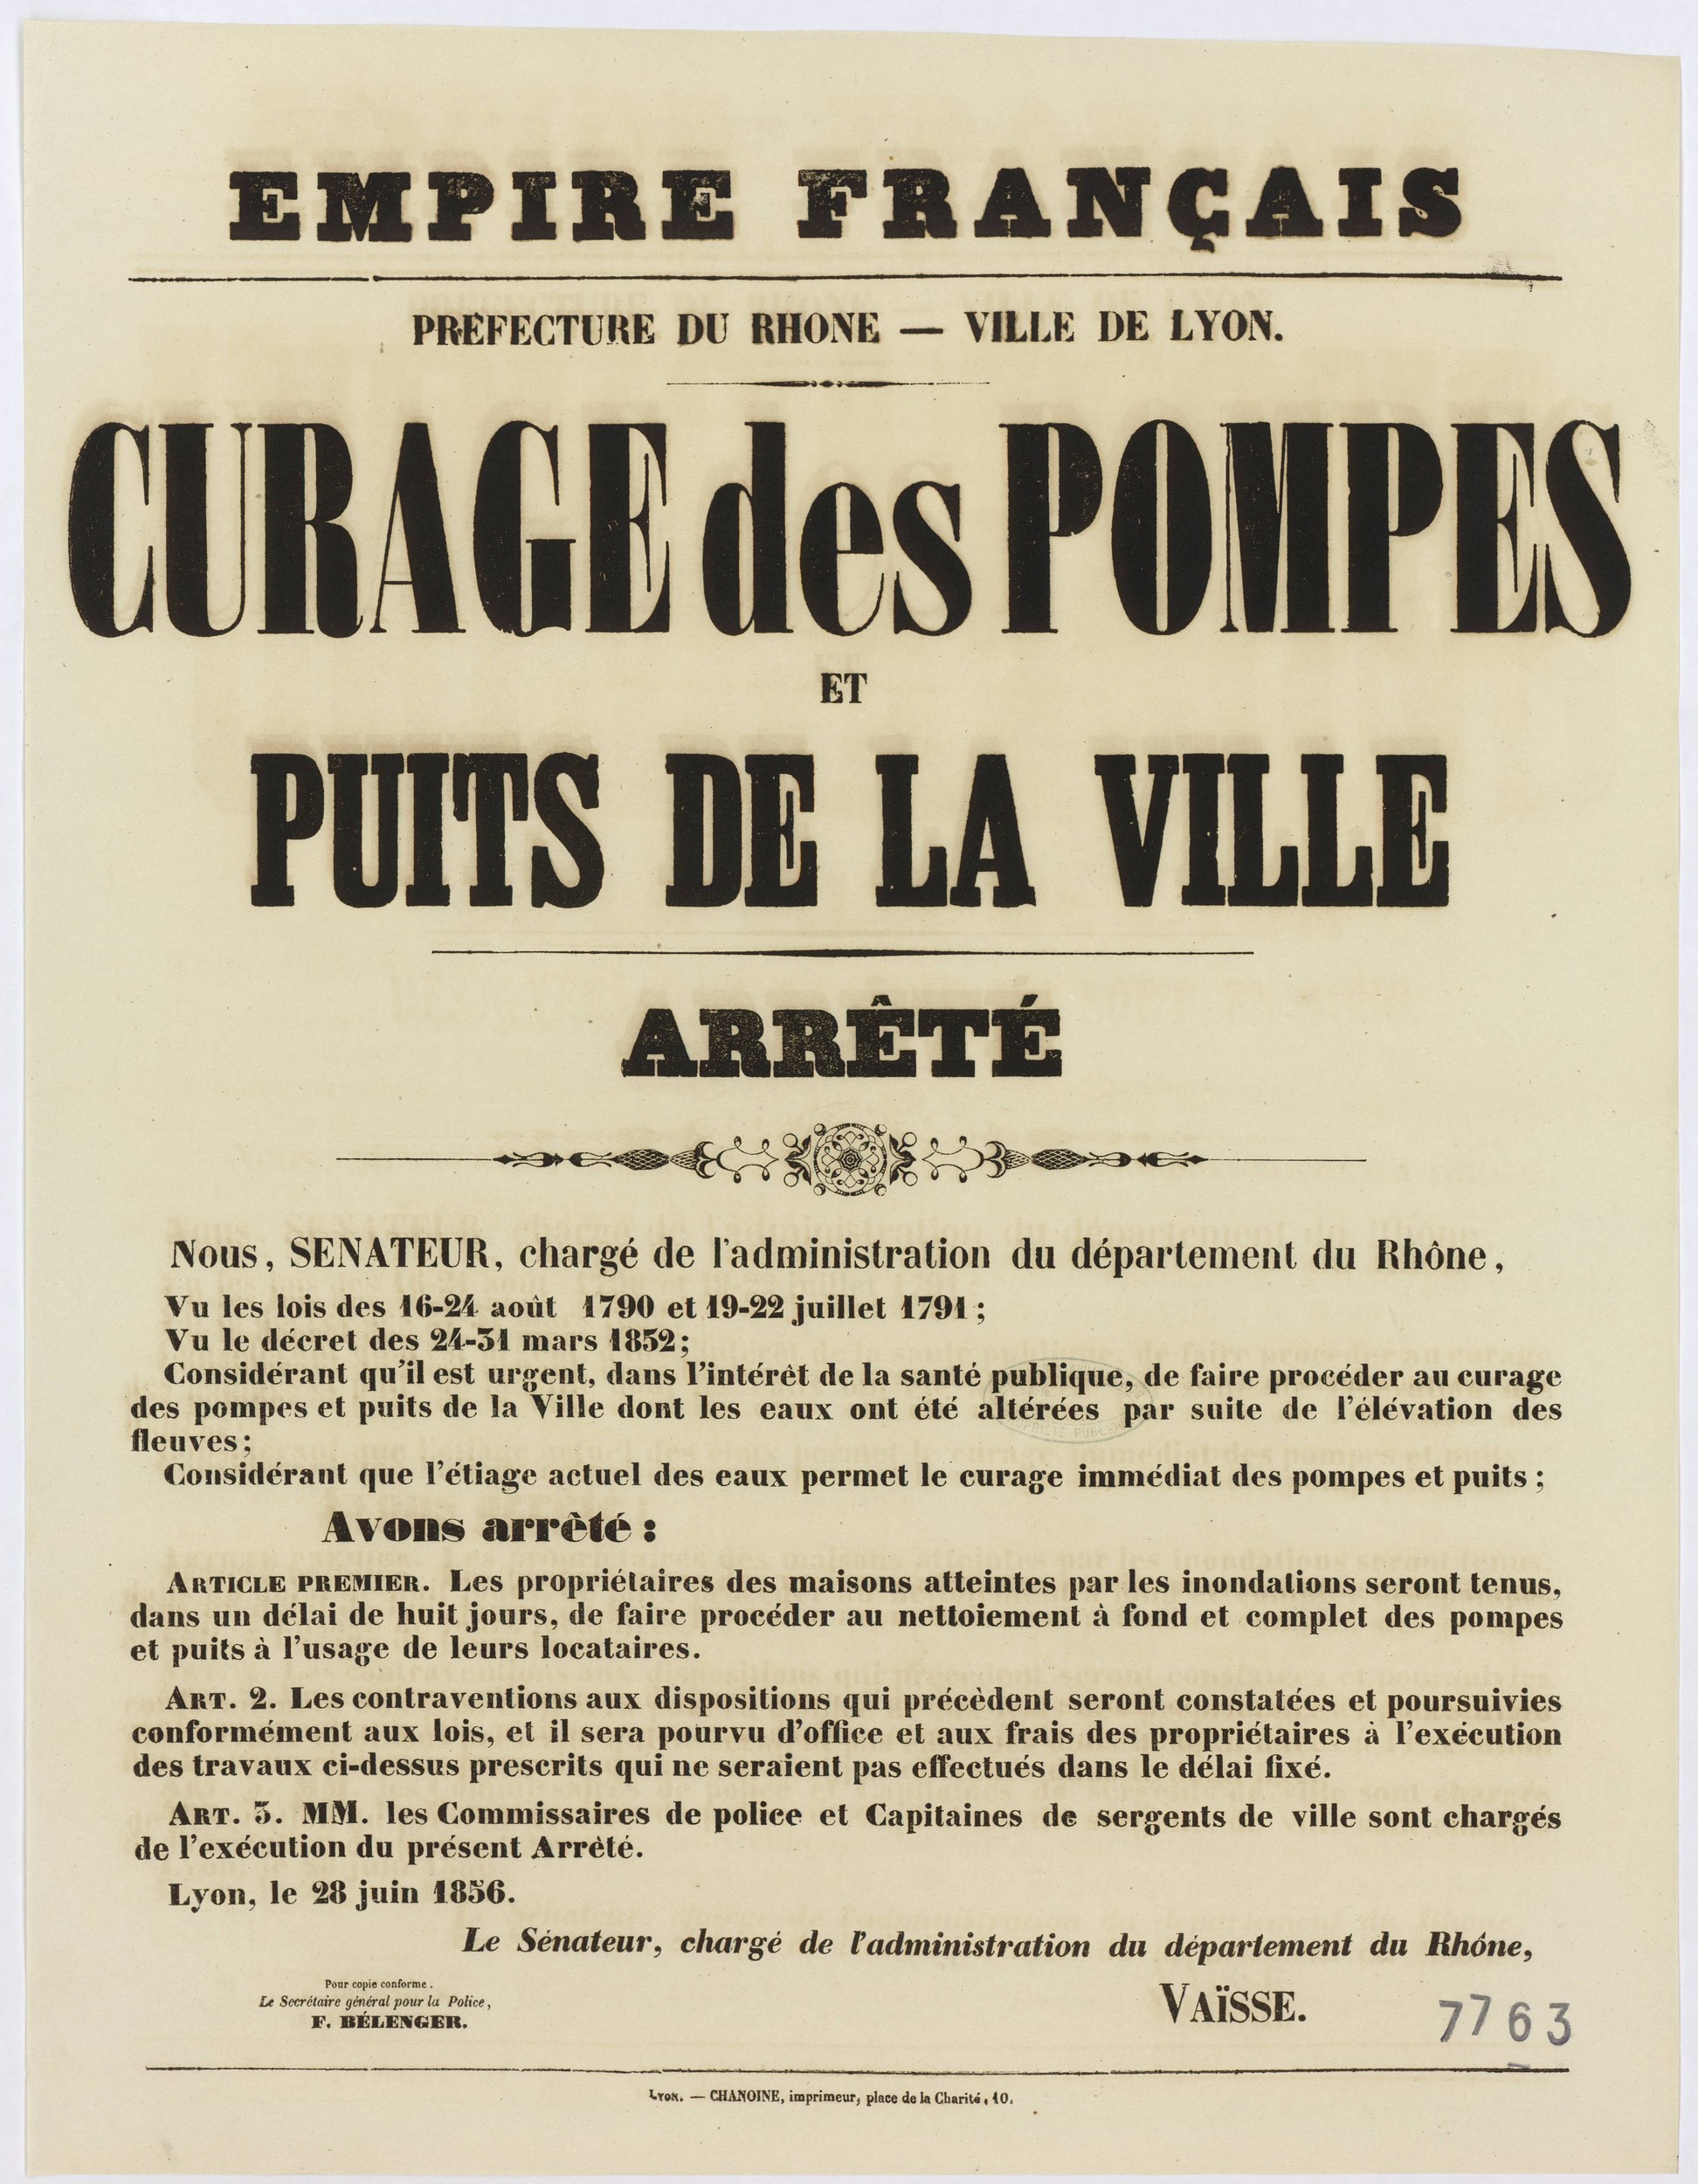 Crues du Rhône et de la Saône de mai 1856 : arrêté du préfet concernant le curage des pompes et des puits de la ville (28/06/1856, cote : 936W7763)